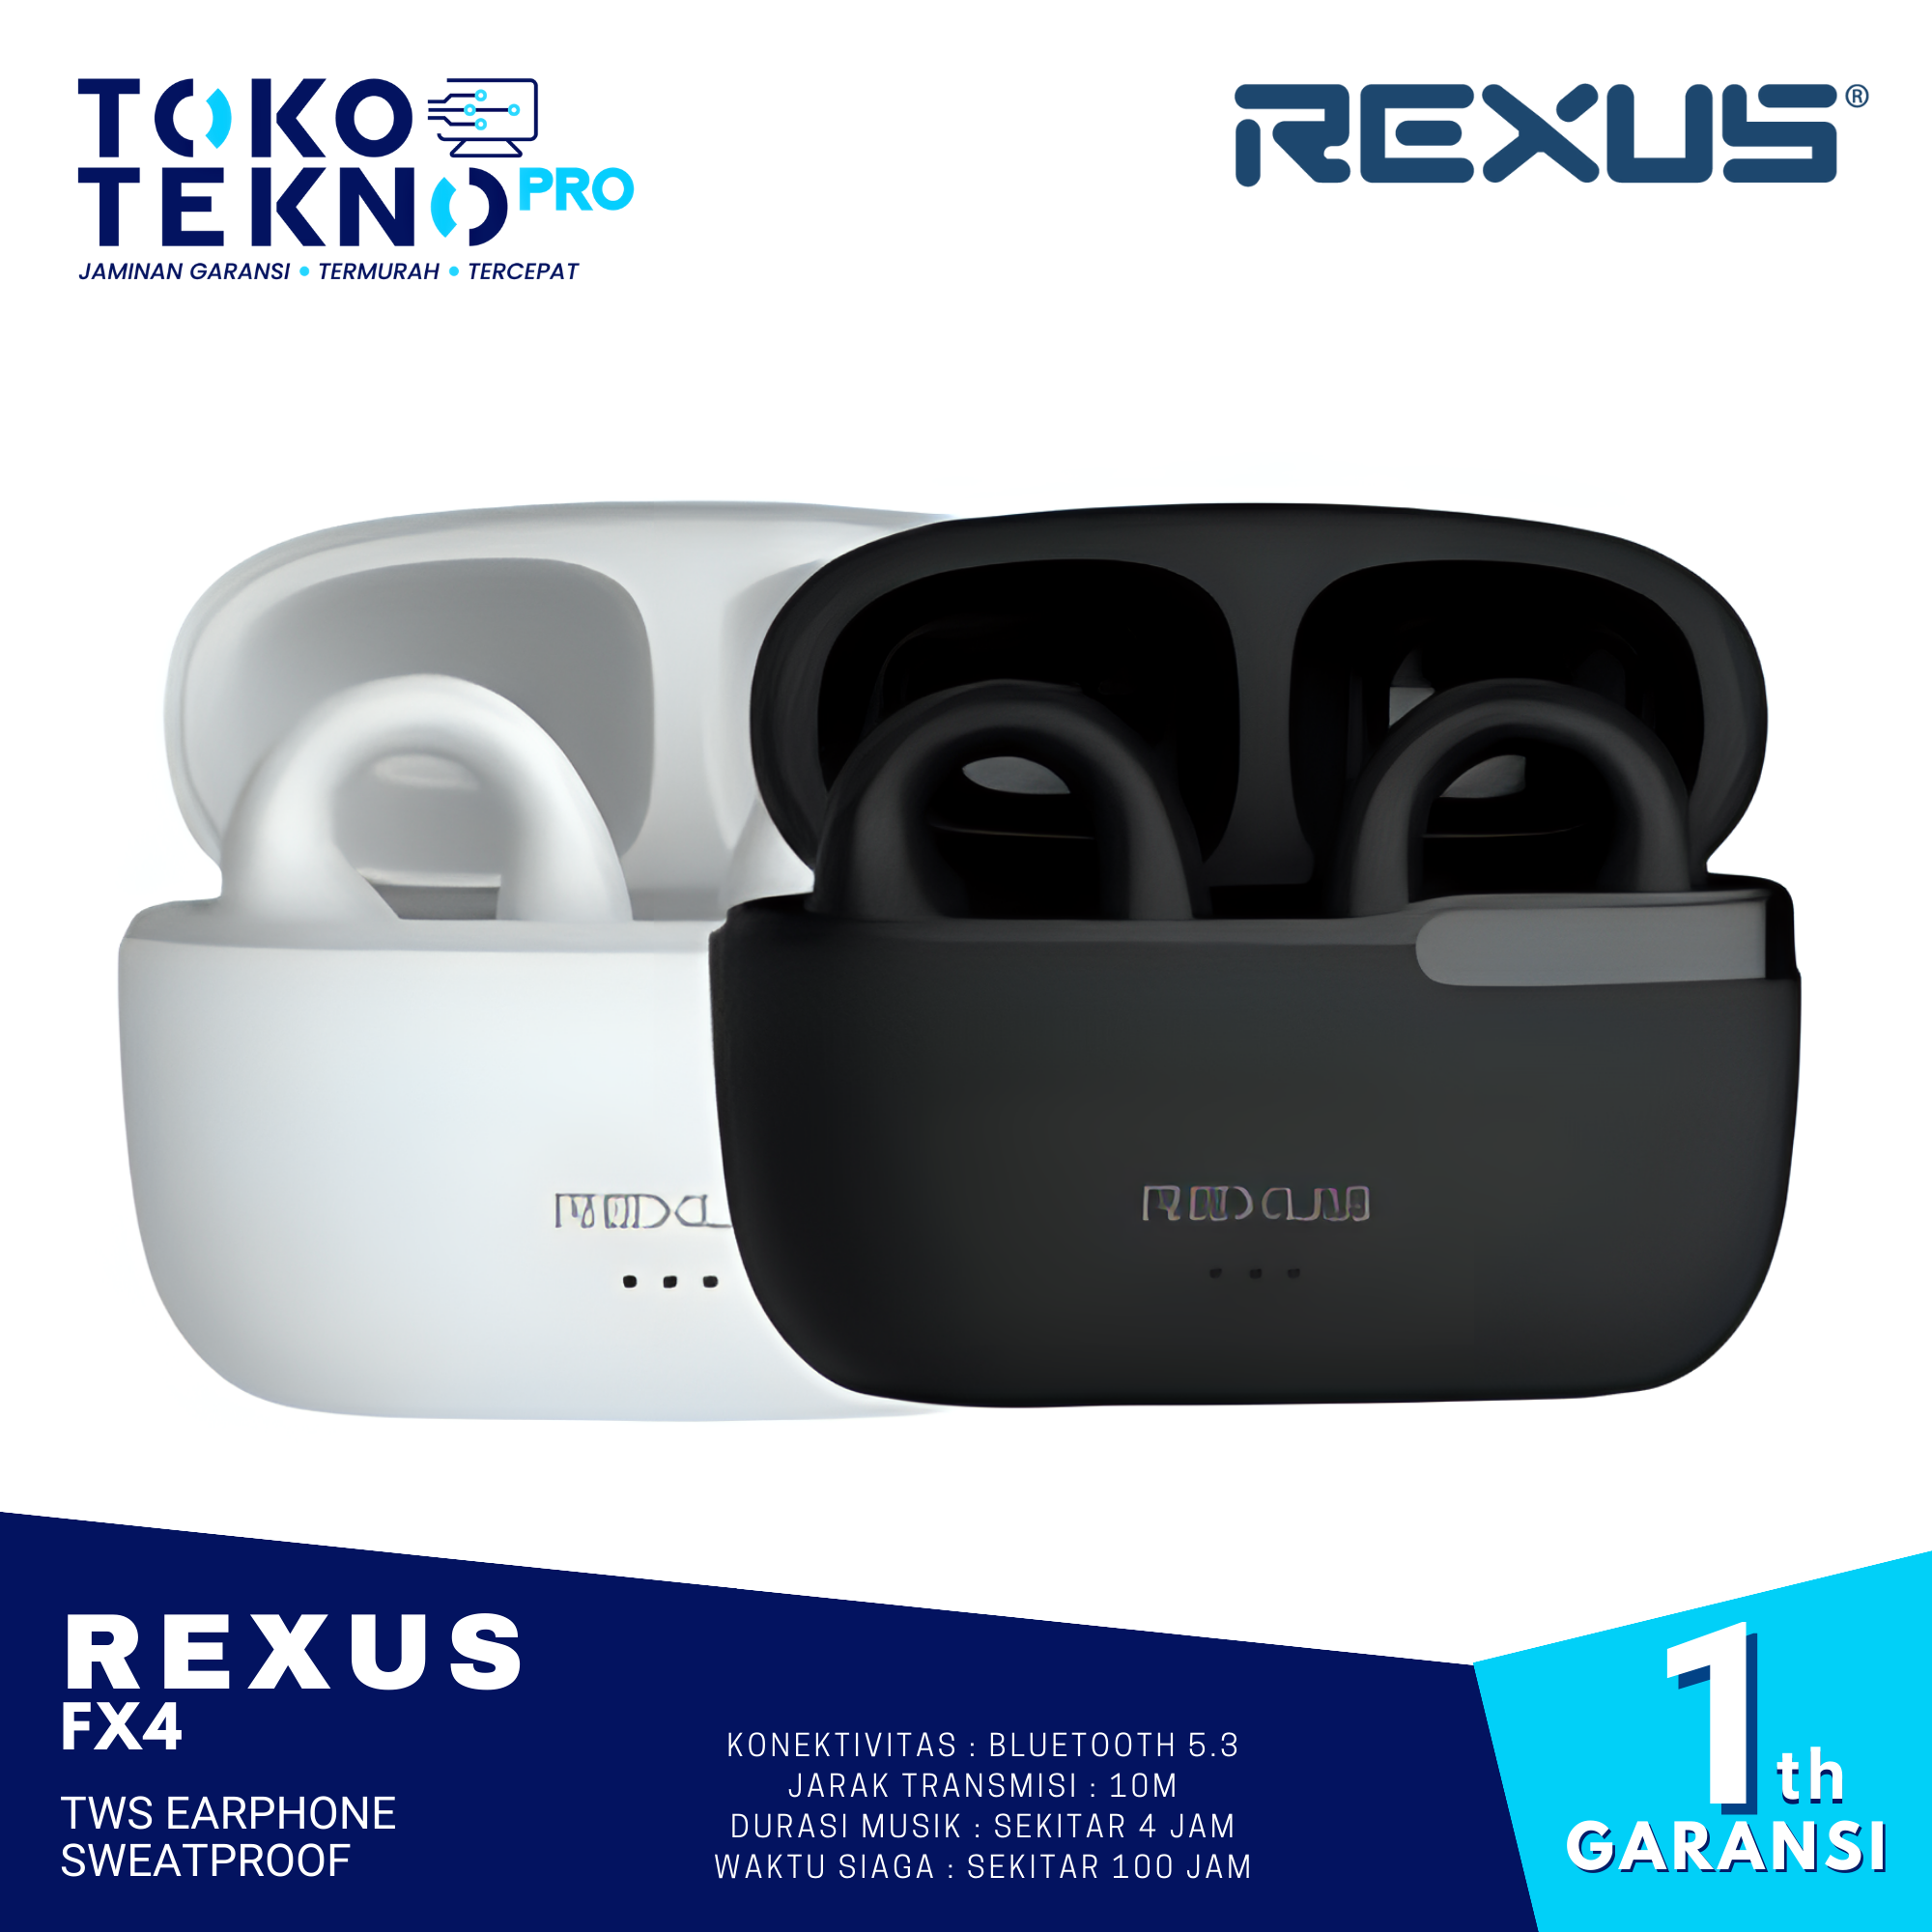 Rexus FX4 TWS Earphone Sweatproof With Bluetooth 5.3